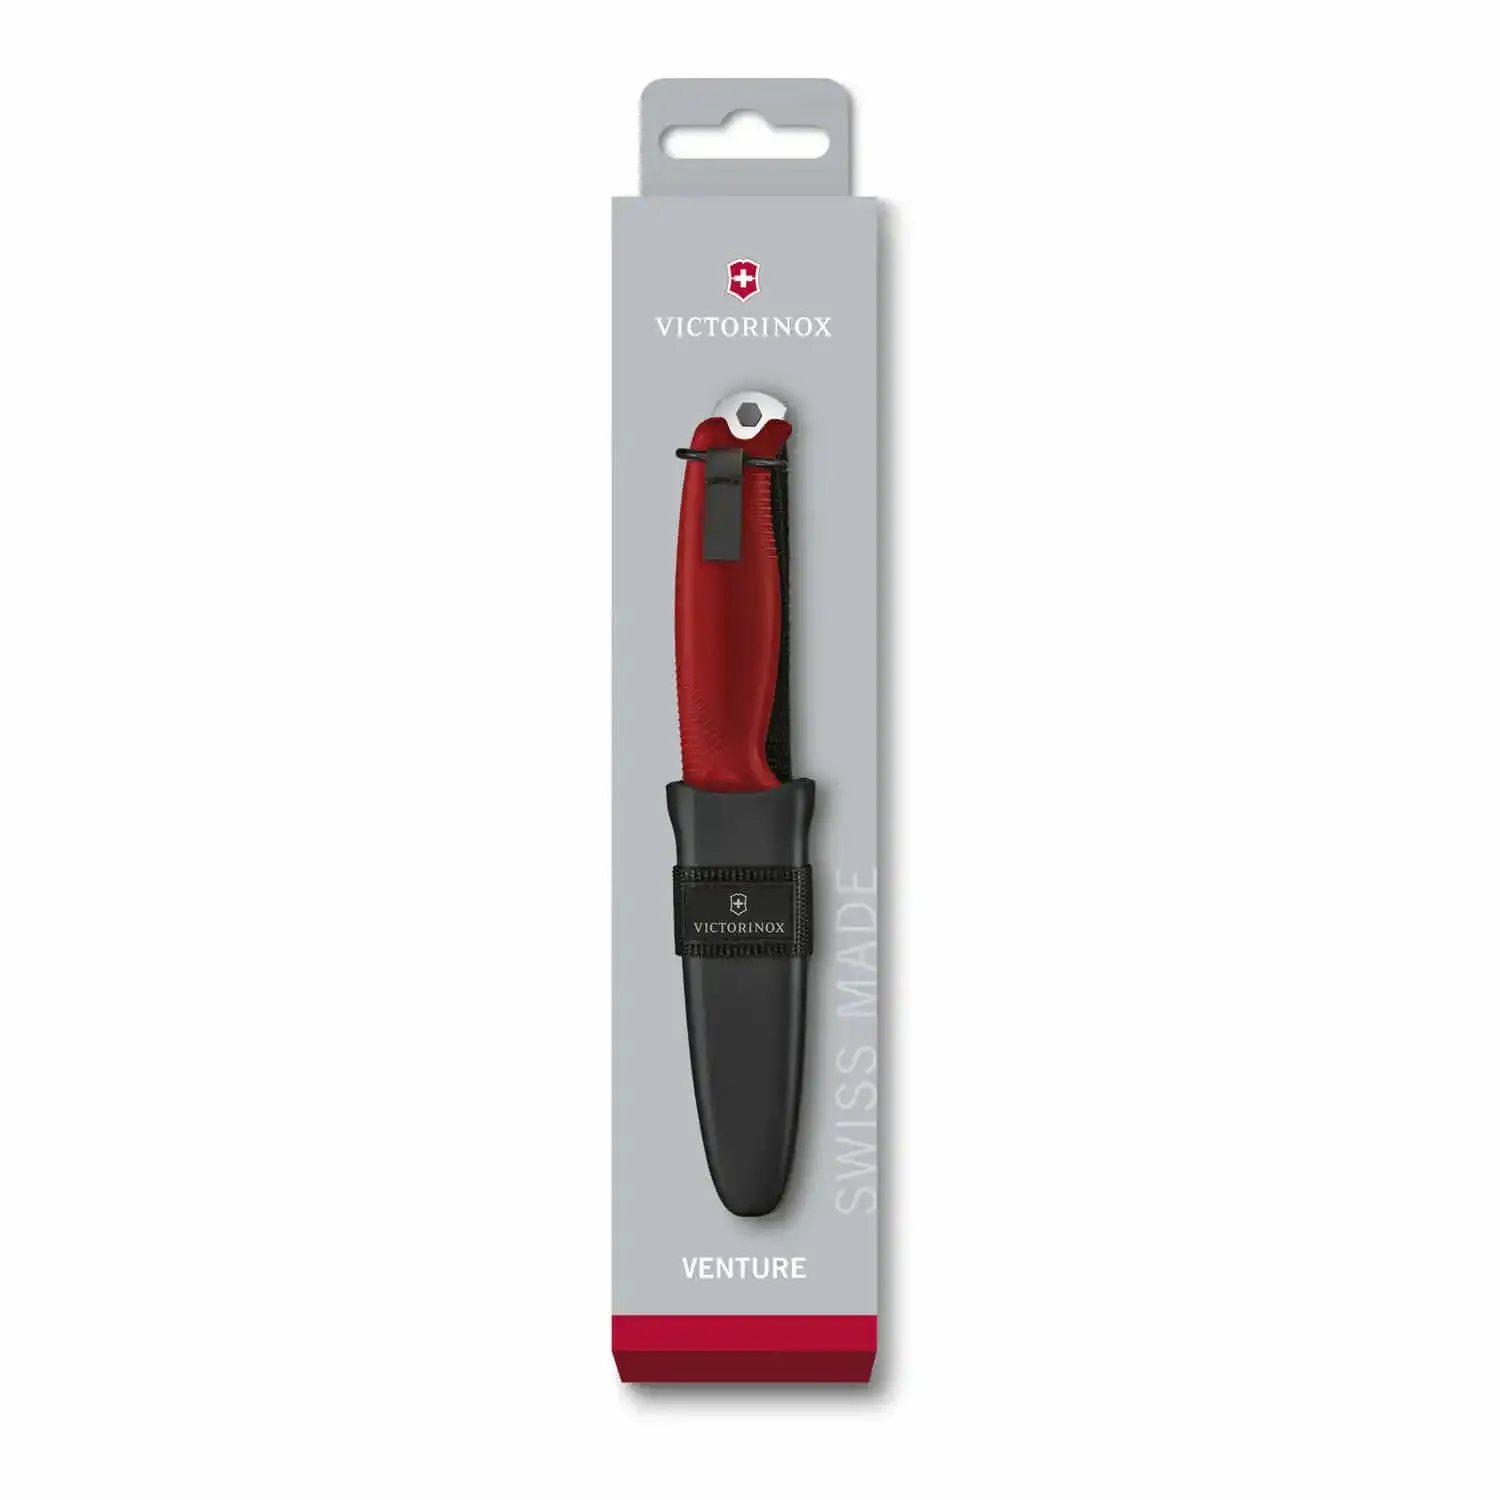 Victorinox 3.0902 Venture Bıçak, Kırmızı - 2